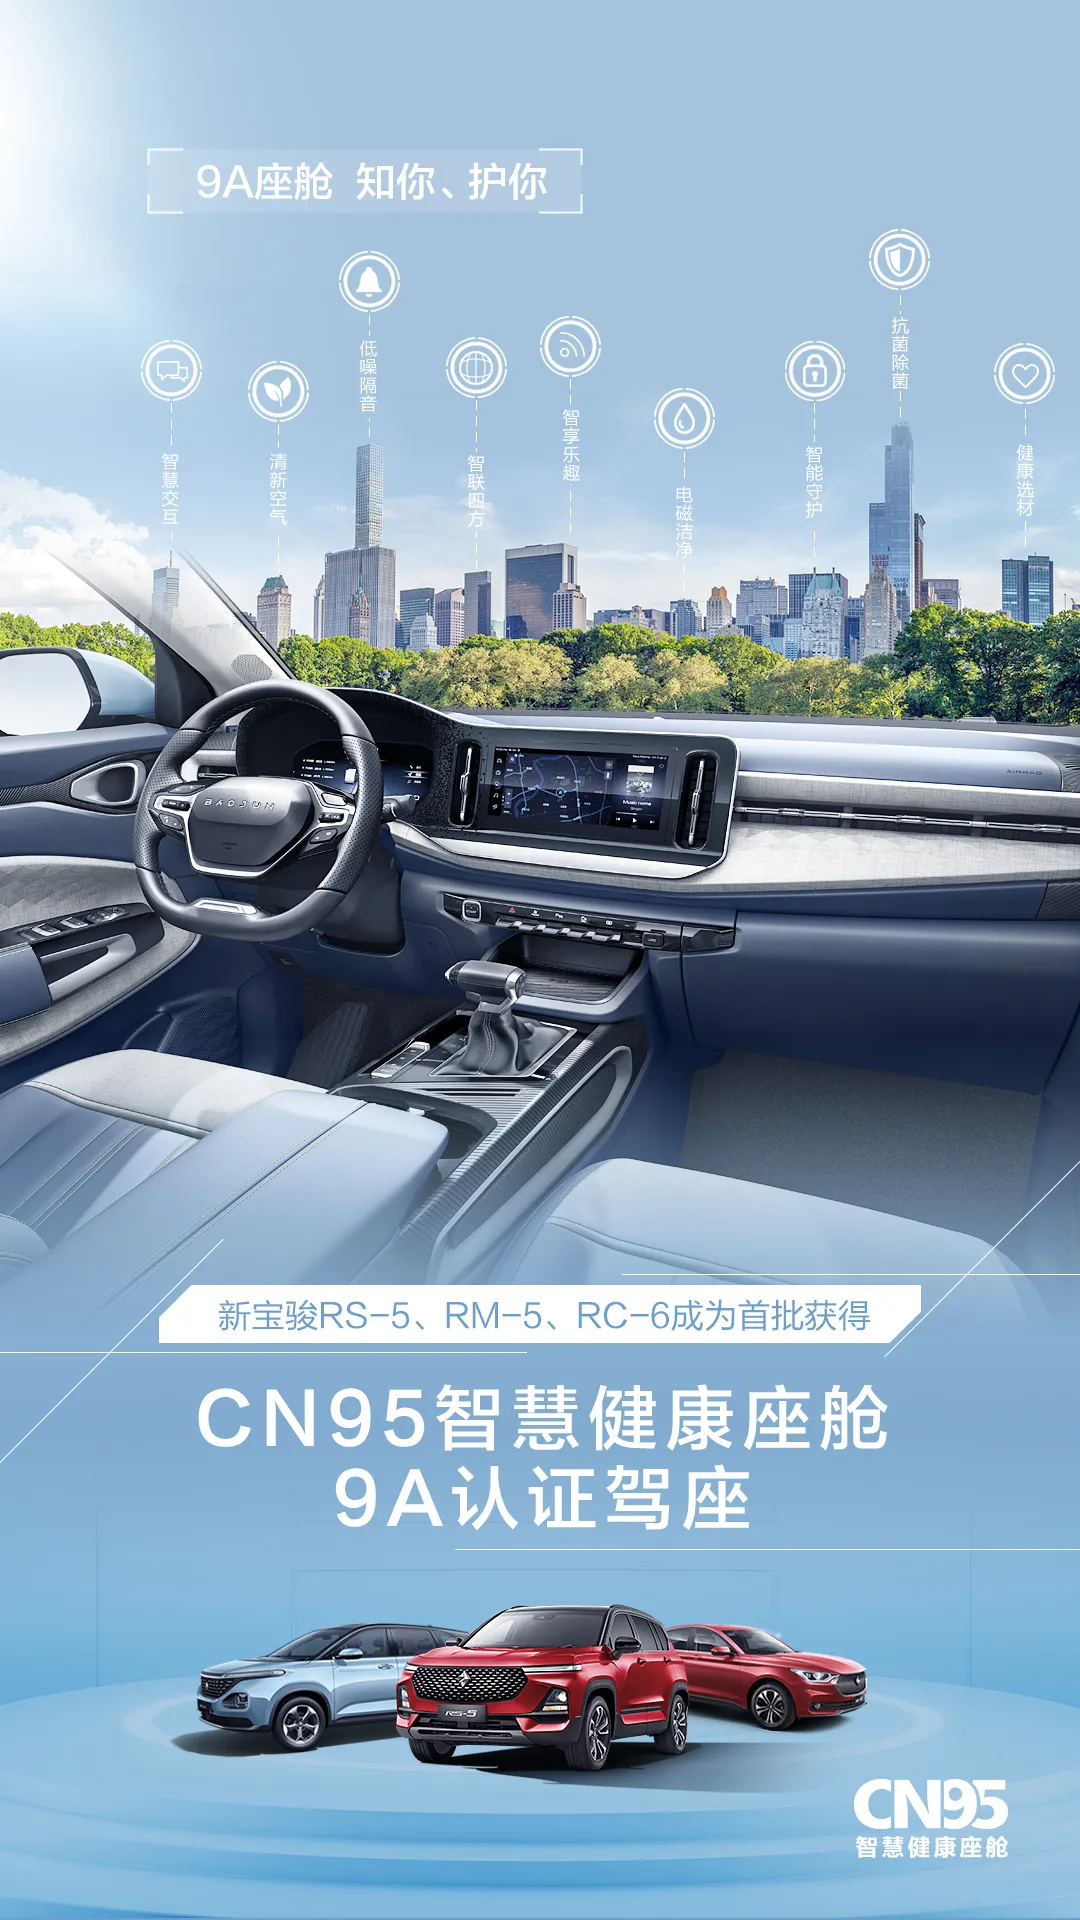 新宝骏RS-5&RM-5&RC-6成为首批获得“CN95智慧健康座舱9A认证”车型